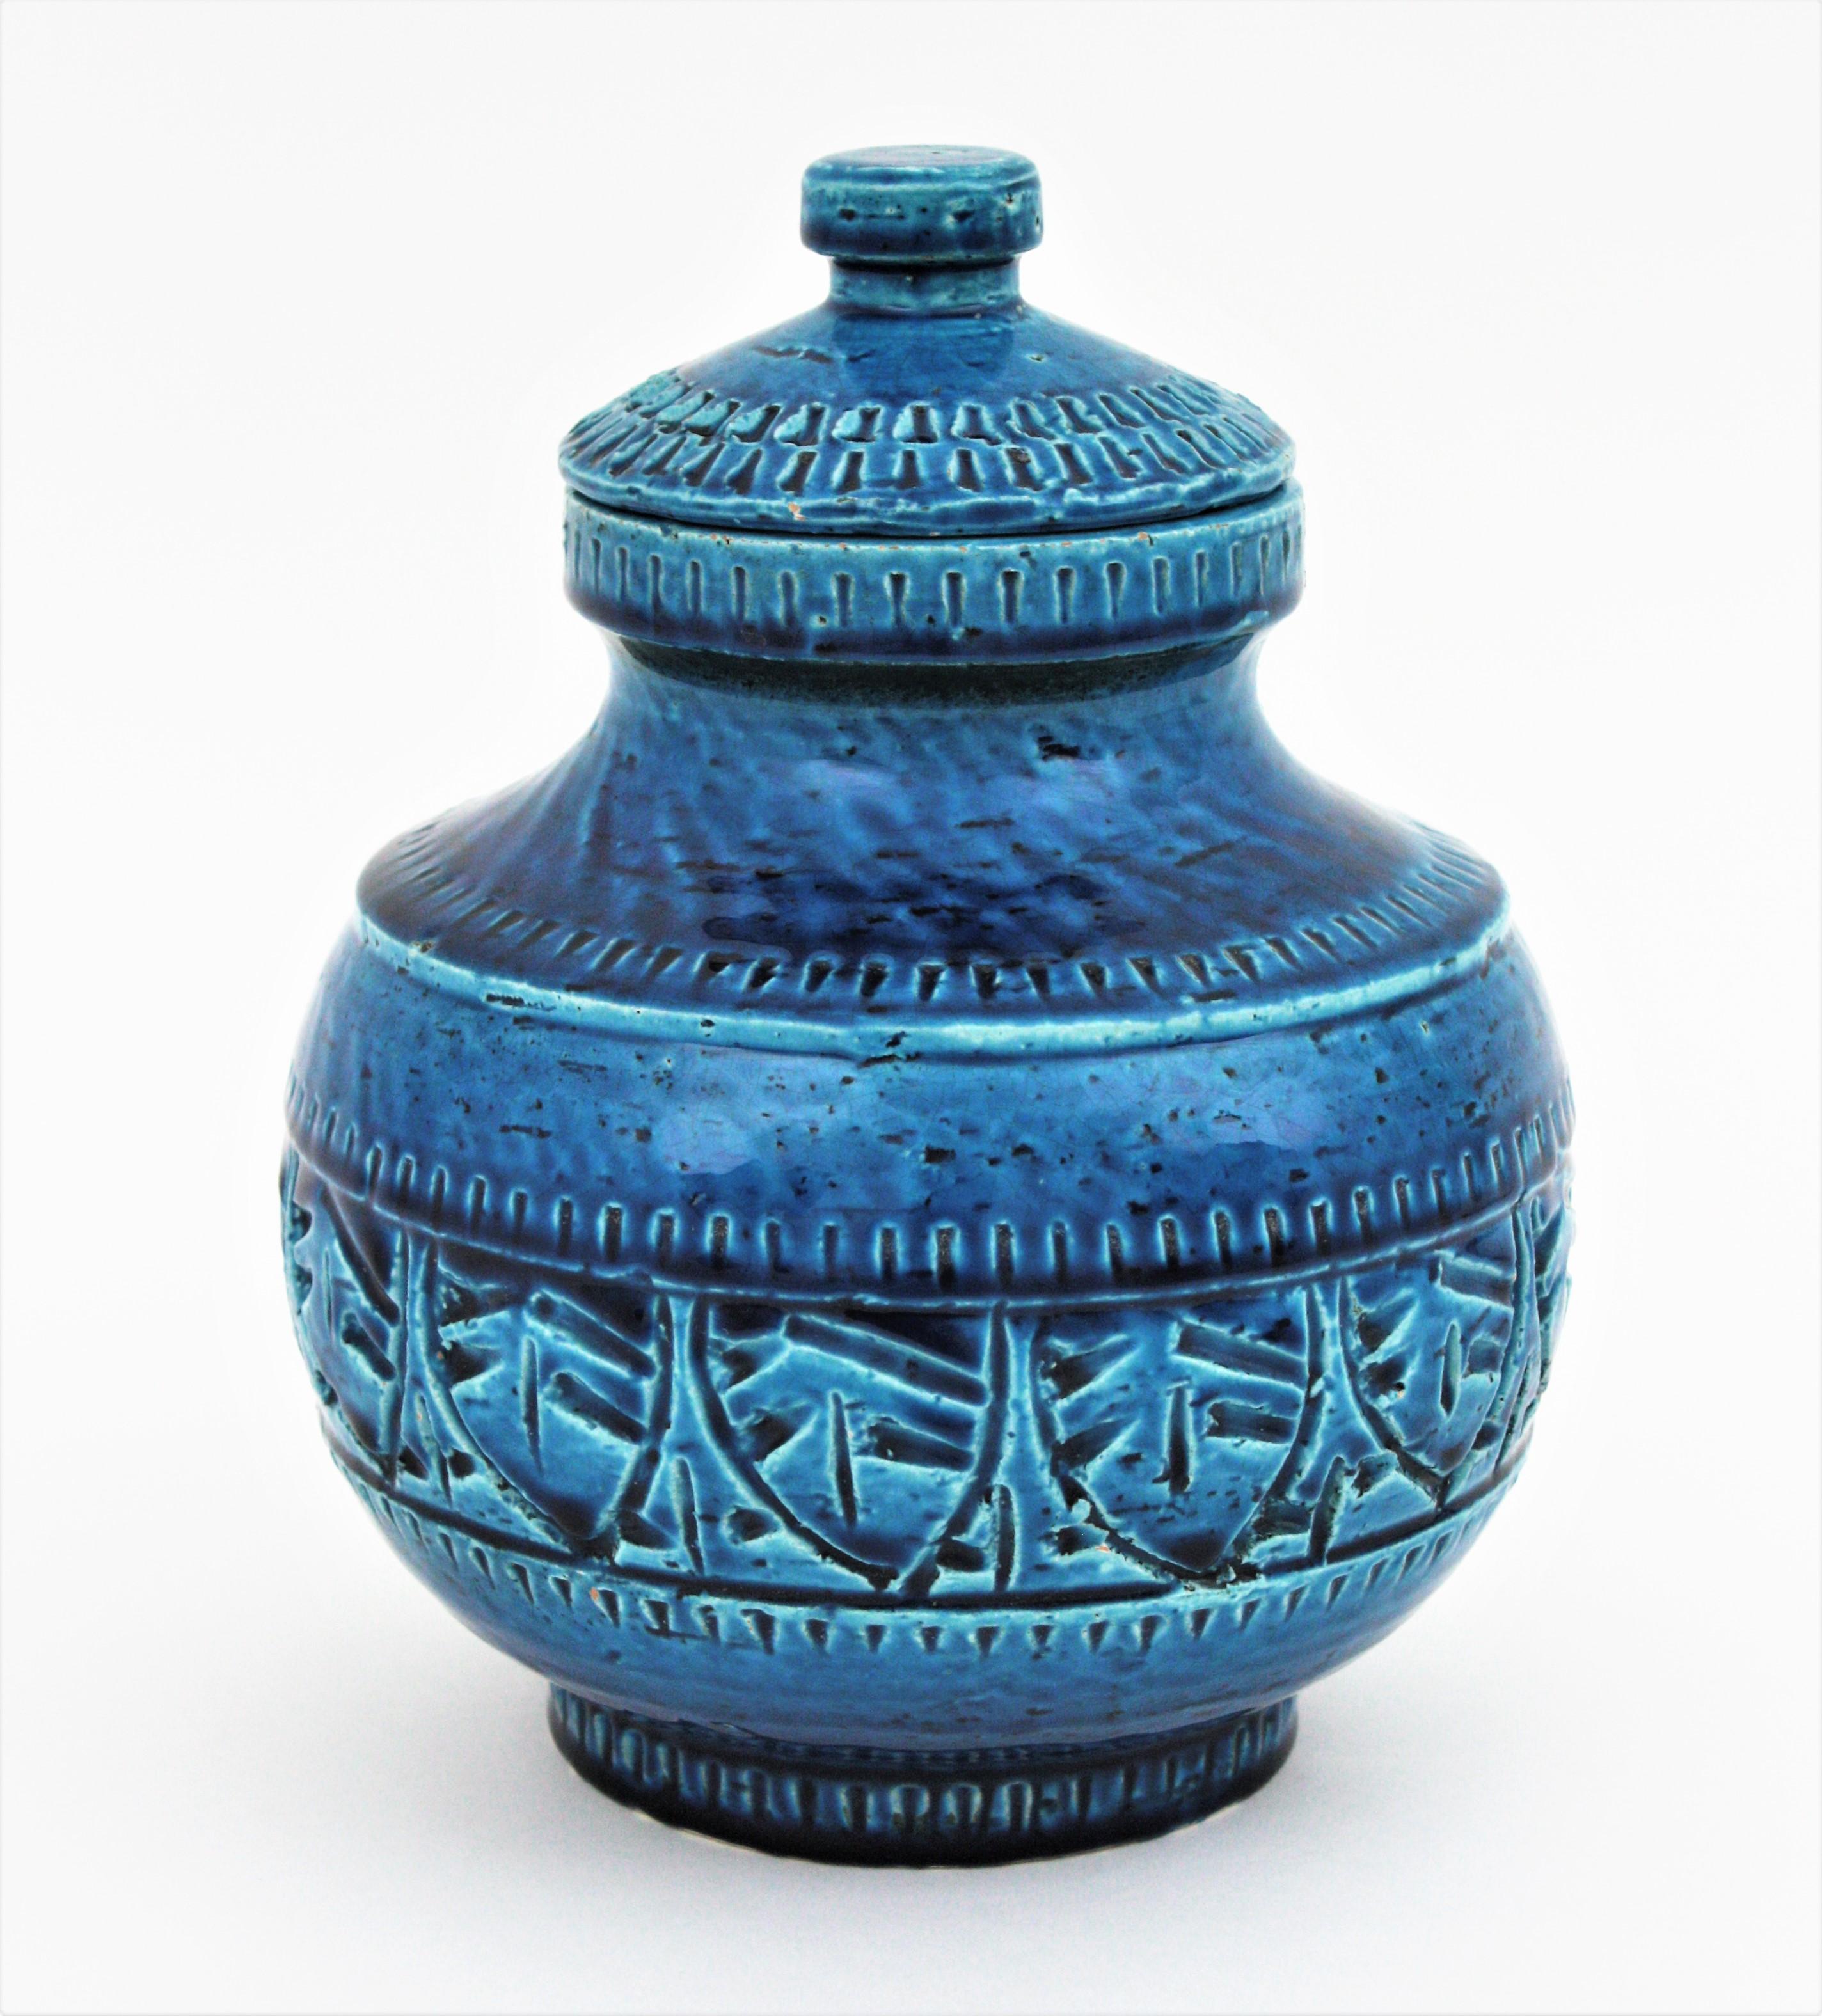 Grande boîte ronde en céramique émaillée bleue (Rimini Blu), fabriquée par A.I.C Ceramiche Italy, dans les années 1950-1960.
Il n'est pas sans rappeler les designs bleus de Rimini d'Aldo Londi et de Bitossi. 
Fabriqué à la main en Italie avec un